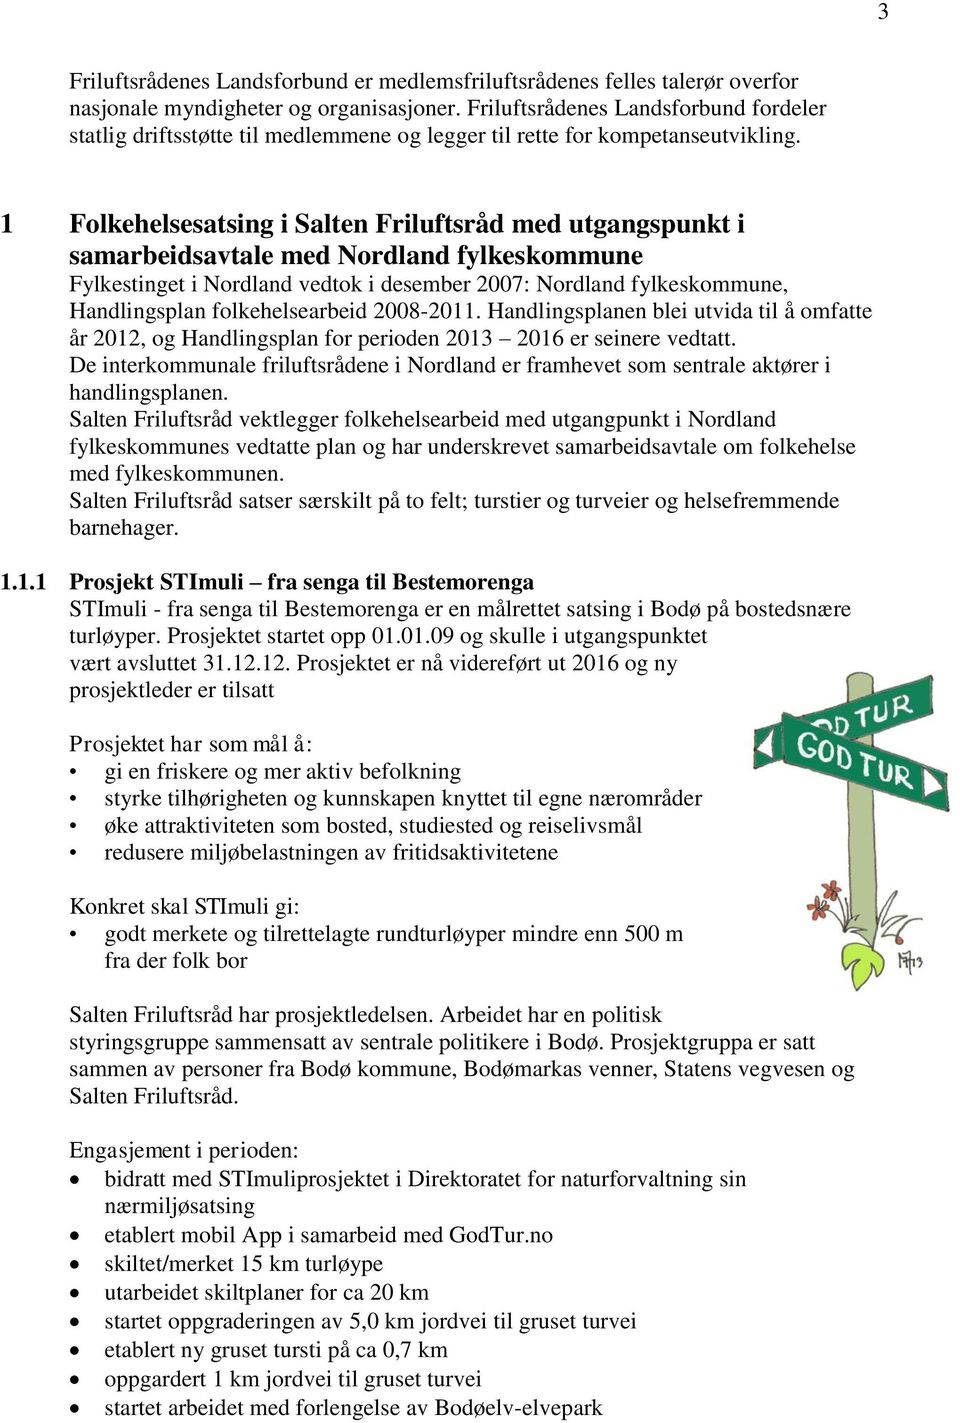 1 Folkehelsesatsing i Salten Friluftsråd med utgangspunkt i samarbeidsavtale med Nordland fylkeskommune Fylkestinget i Nordland vedtok i desember 2007: Nordland fylkeskommune, Handlingsplan